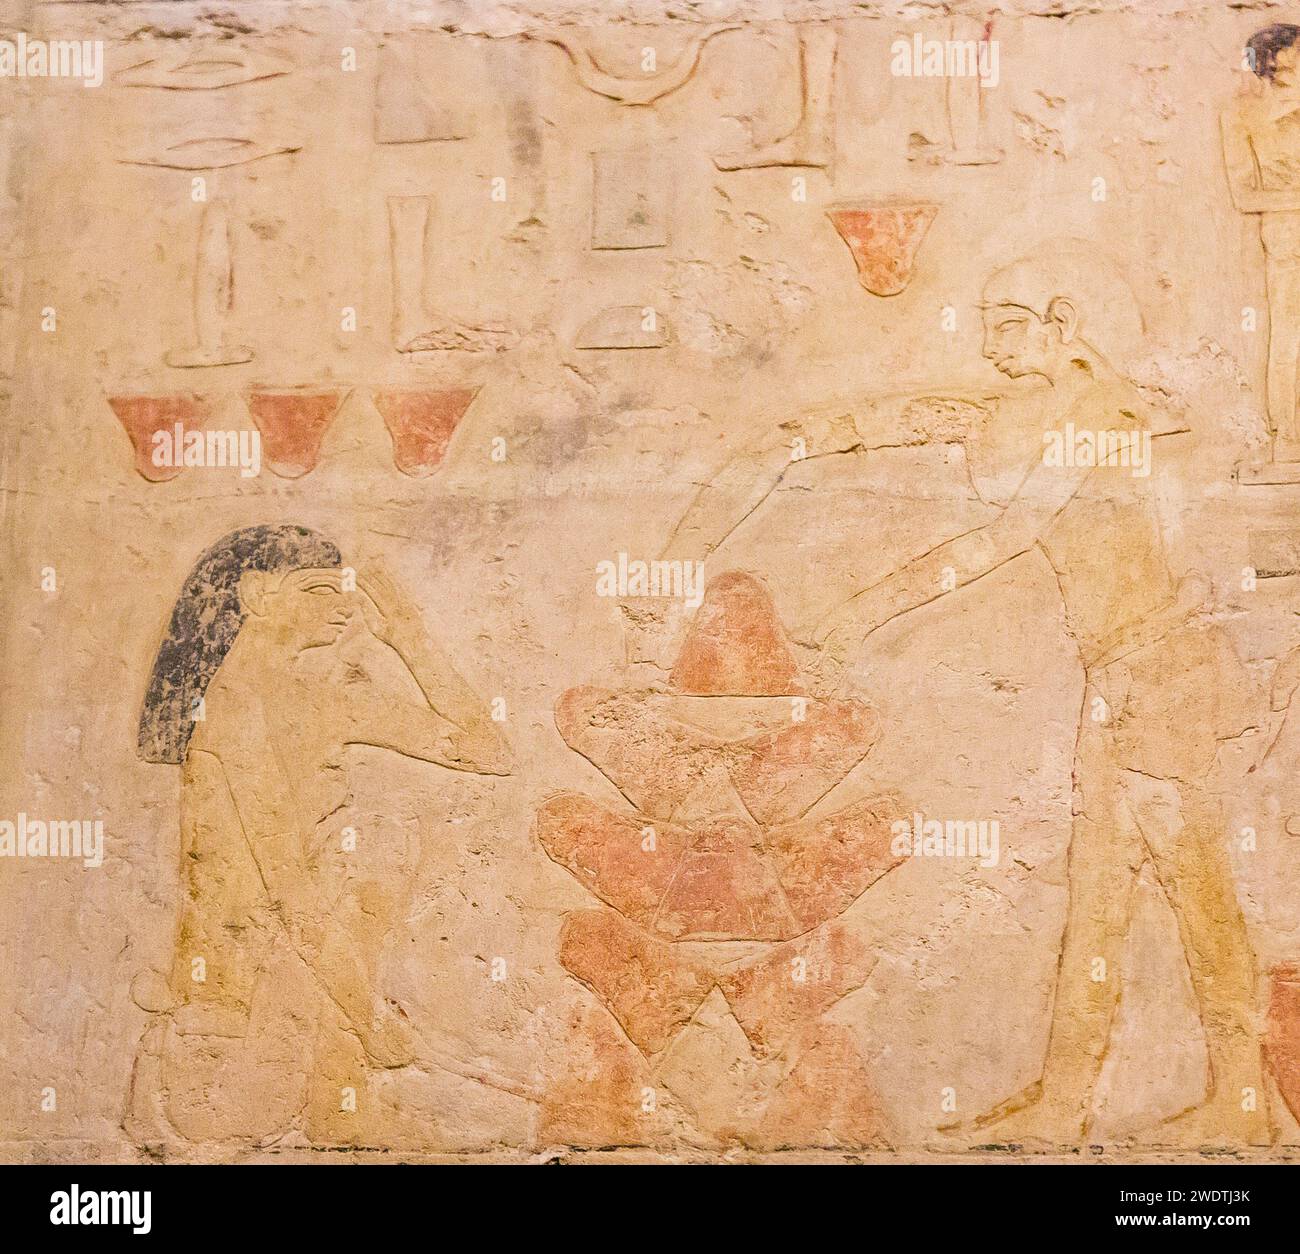 Ägypten, Sakkara, Grab von Ty, Bäckerei Szenen : Erwärmen Sie leere Töpfe, die als Mini-Öfen verwendet werden. Schützen Sie das Gesicht mit dem Arm vor Hitze. Stockfoto